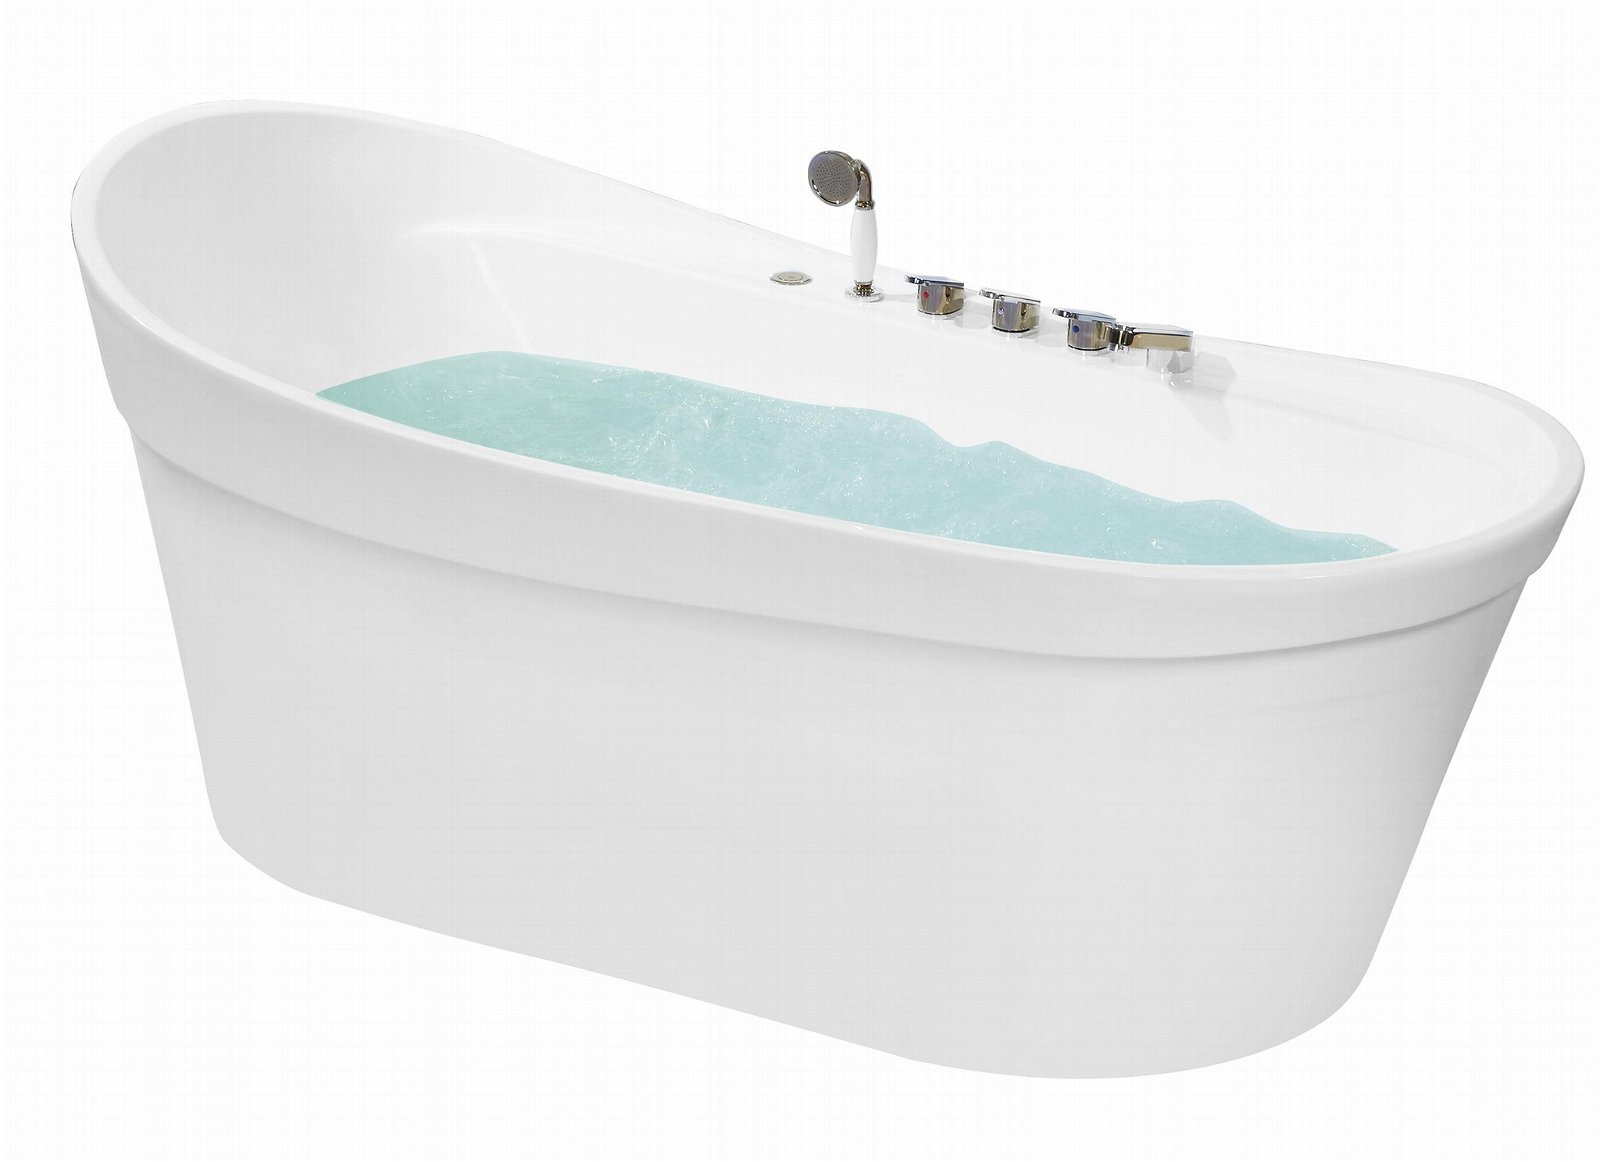 佛山市特洛意衛浴供應T-K5001浴缸